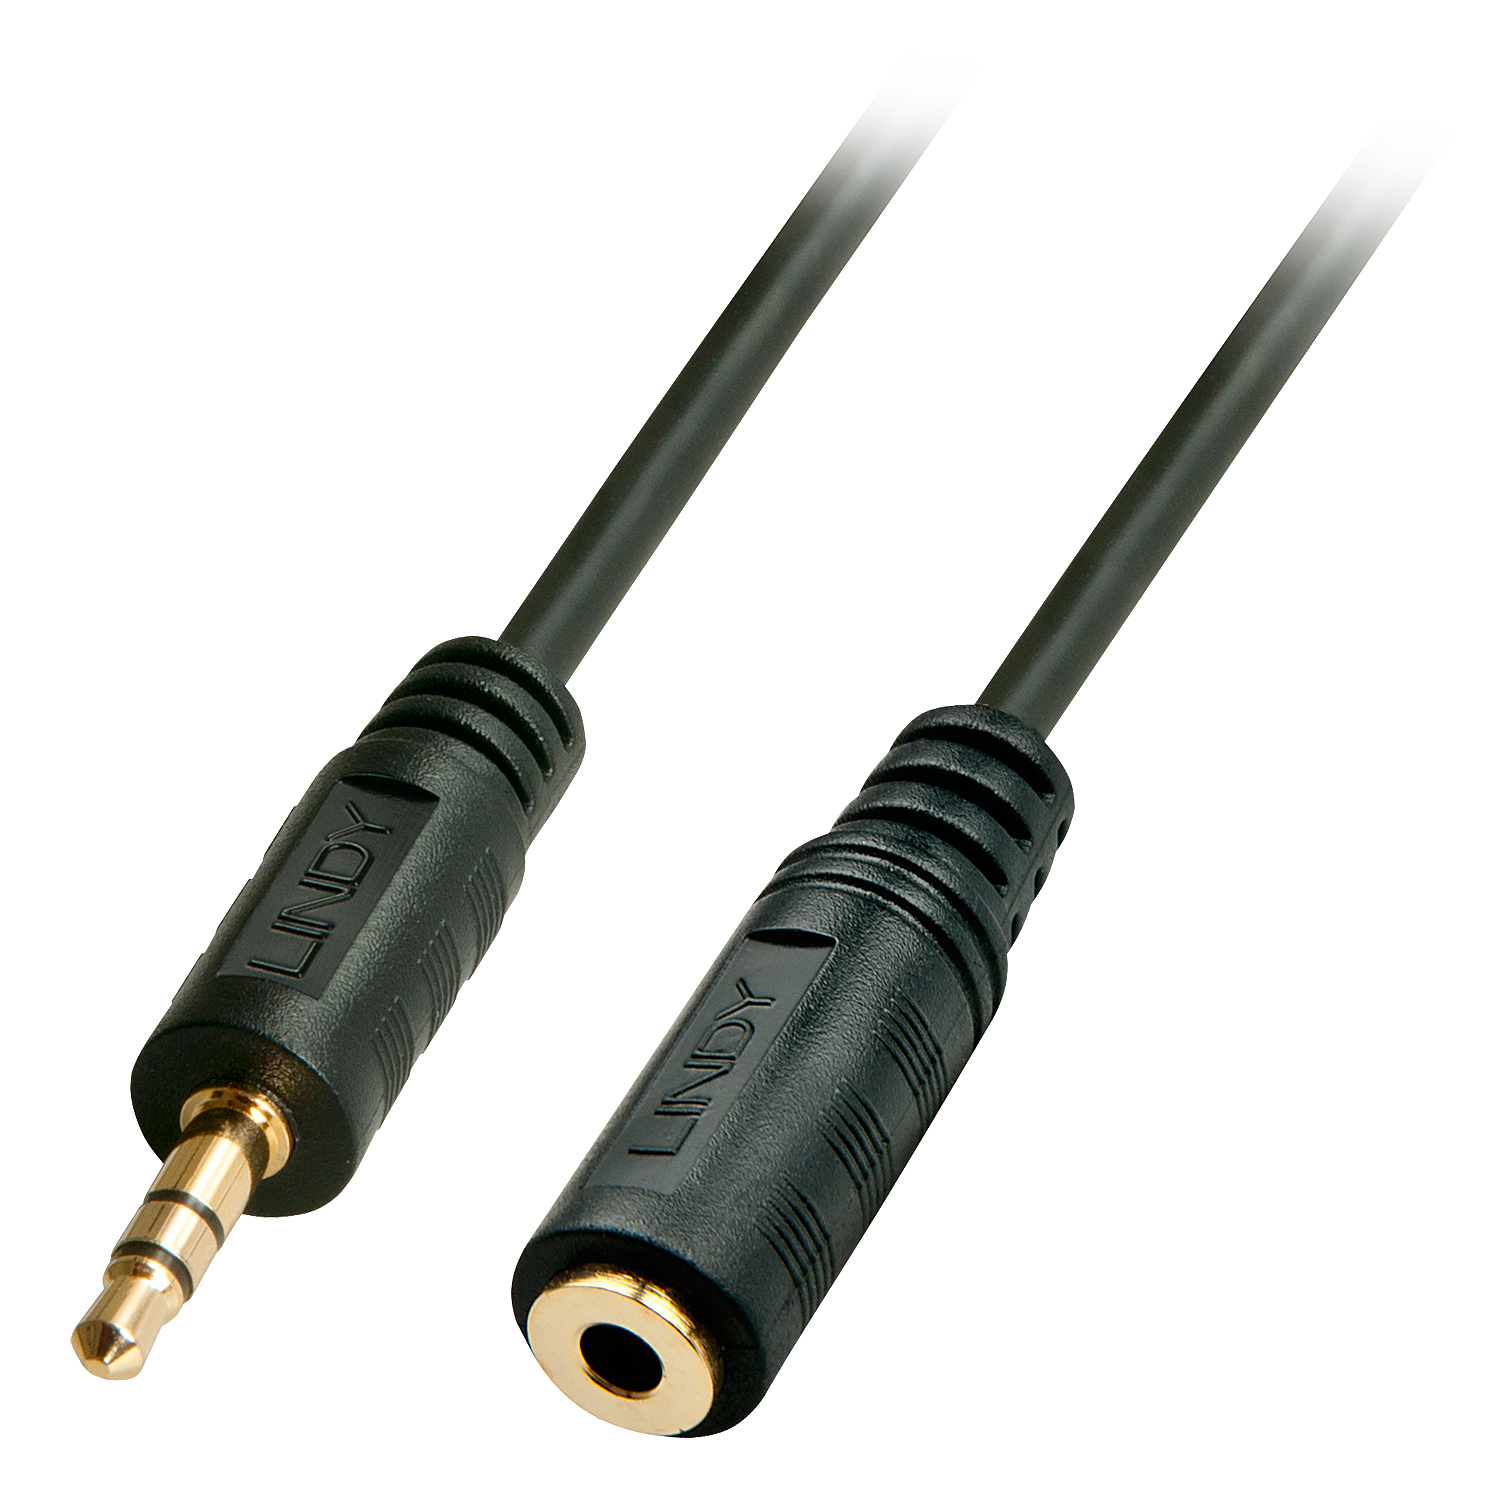 Photos - Cable (video, audio, USB) Lindy 2m Premium Audio 3.5mm Jack Extension Cable 35652 